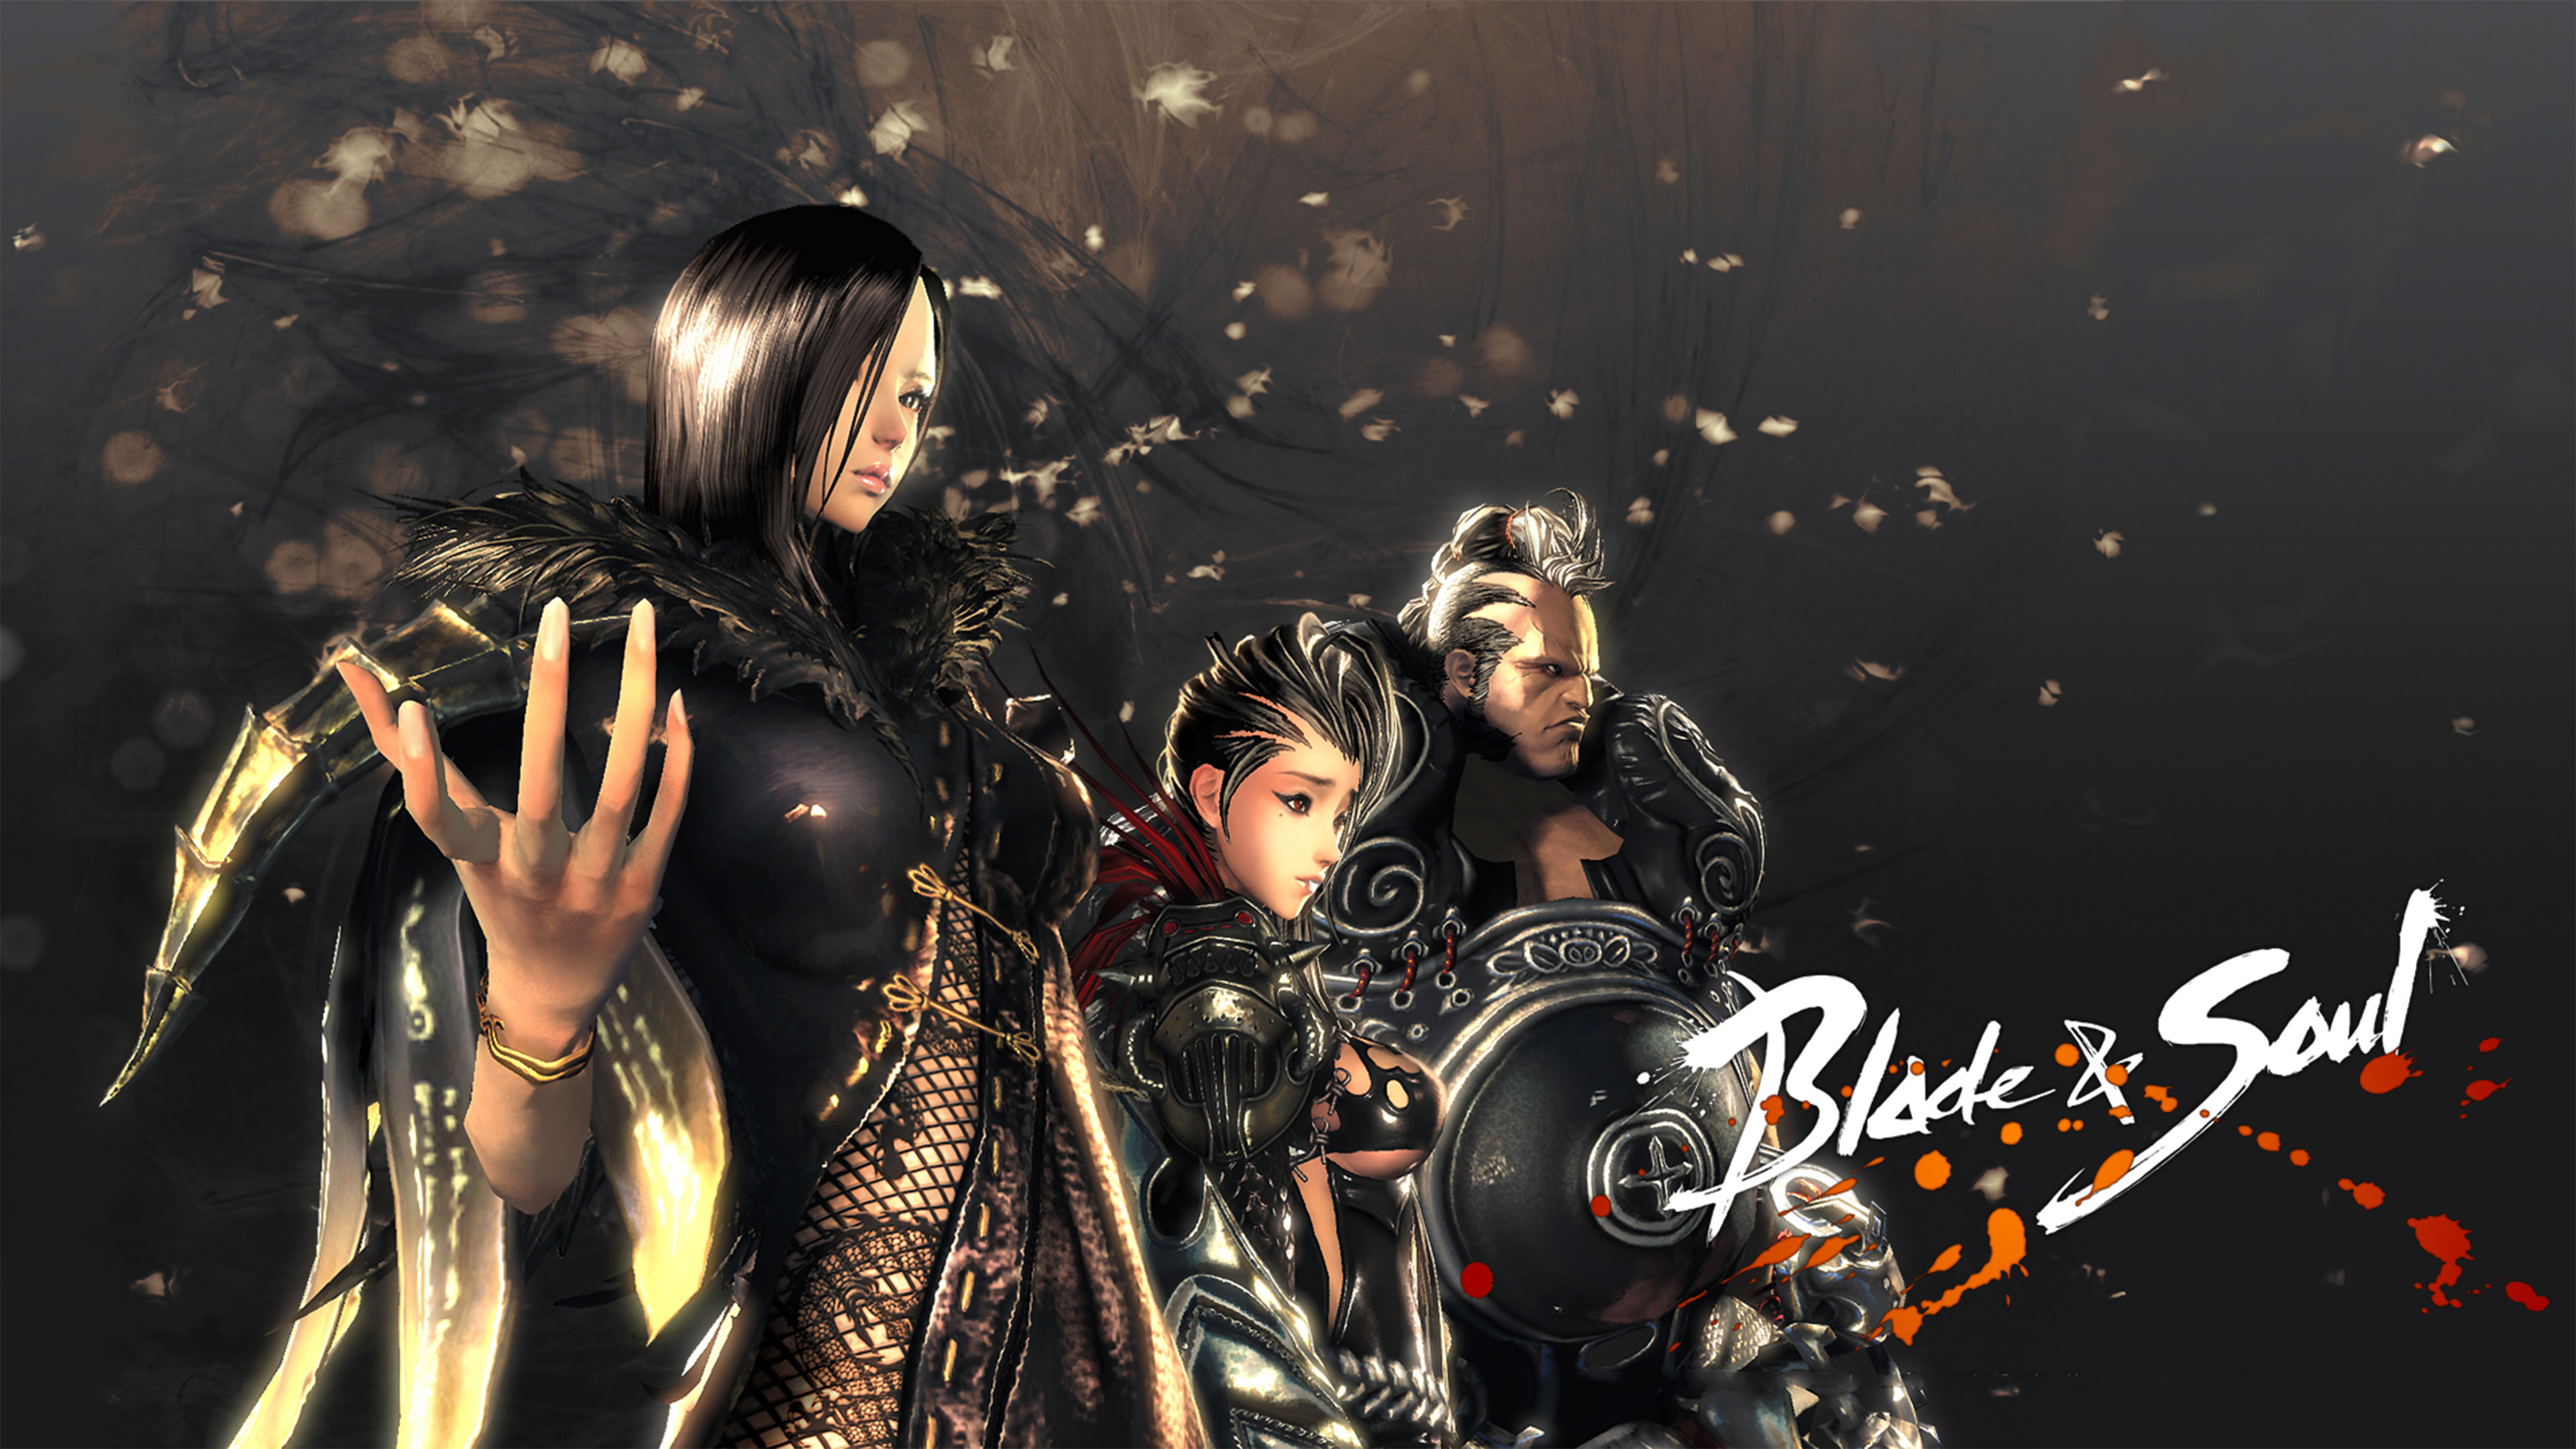 Blade & Soul Wallpapers in Ultra HD | 4K - Gameranx